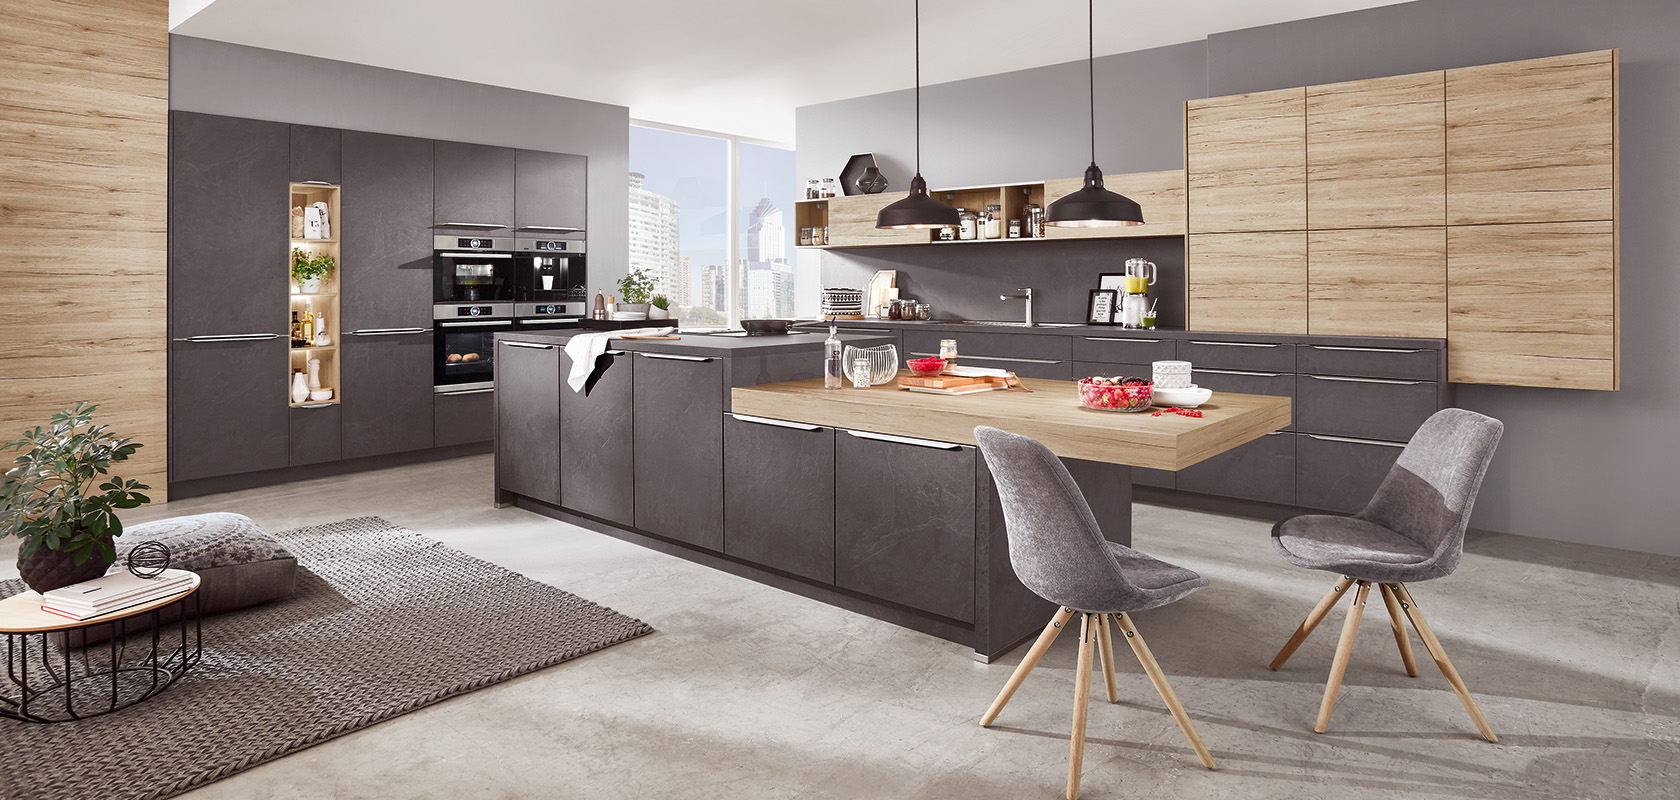 Modernes Kücheninterieur-Design mit eleganten grauen und Holzschränken, integrierten Geräten und einem stilvollen Essbereich mit bequemen Sitzgelegenheiten und Stadtblick.